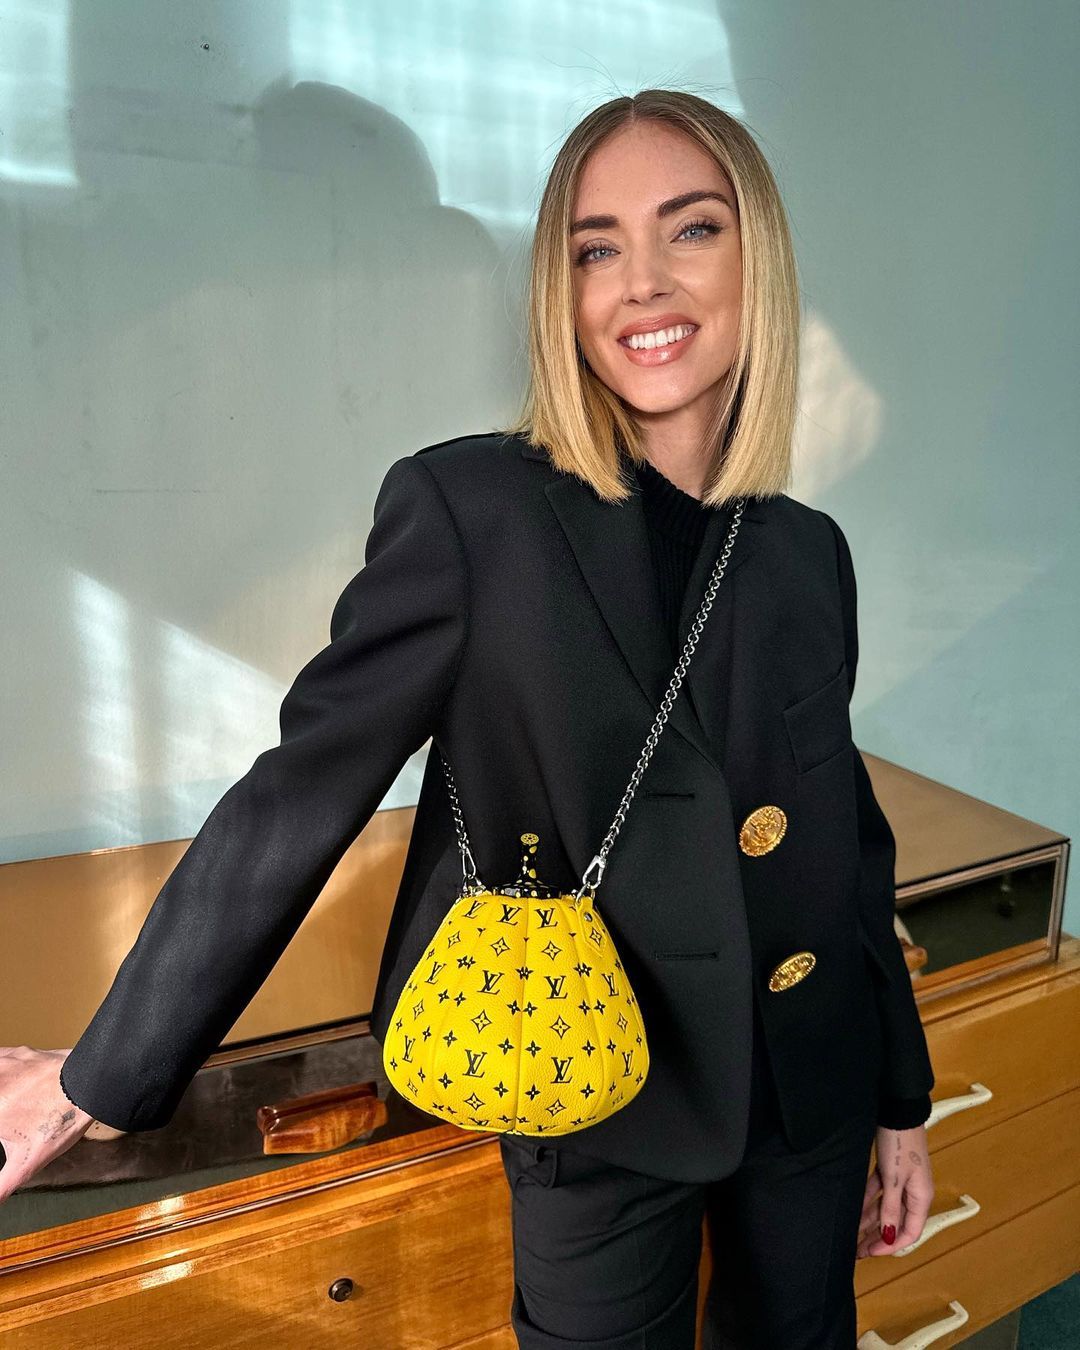 Di Chiara Ferragni e della sua borsa Louis Vuitton in palette brillante